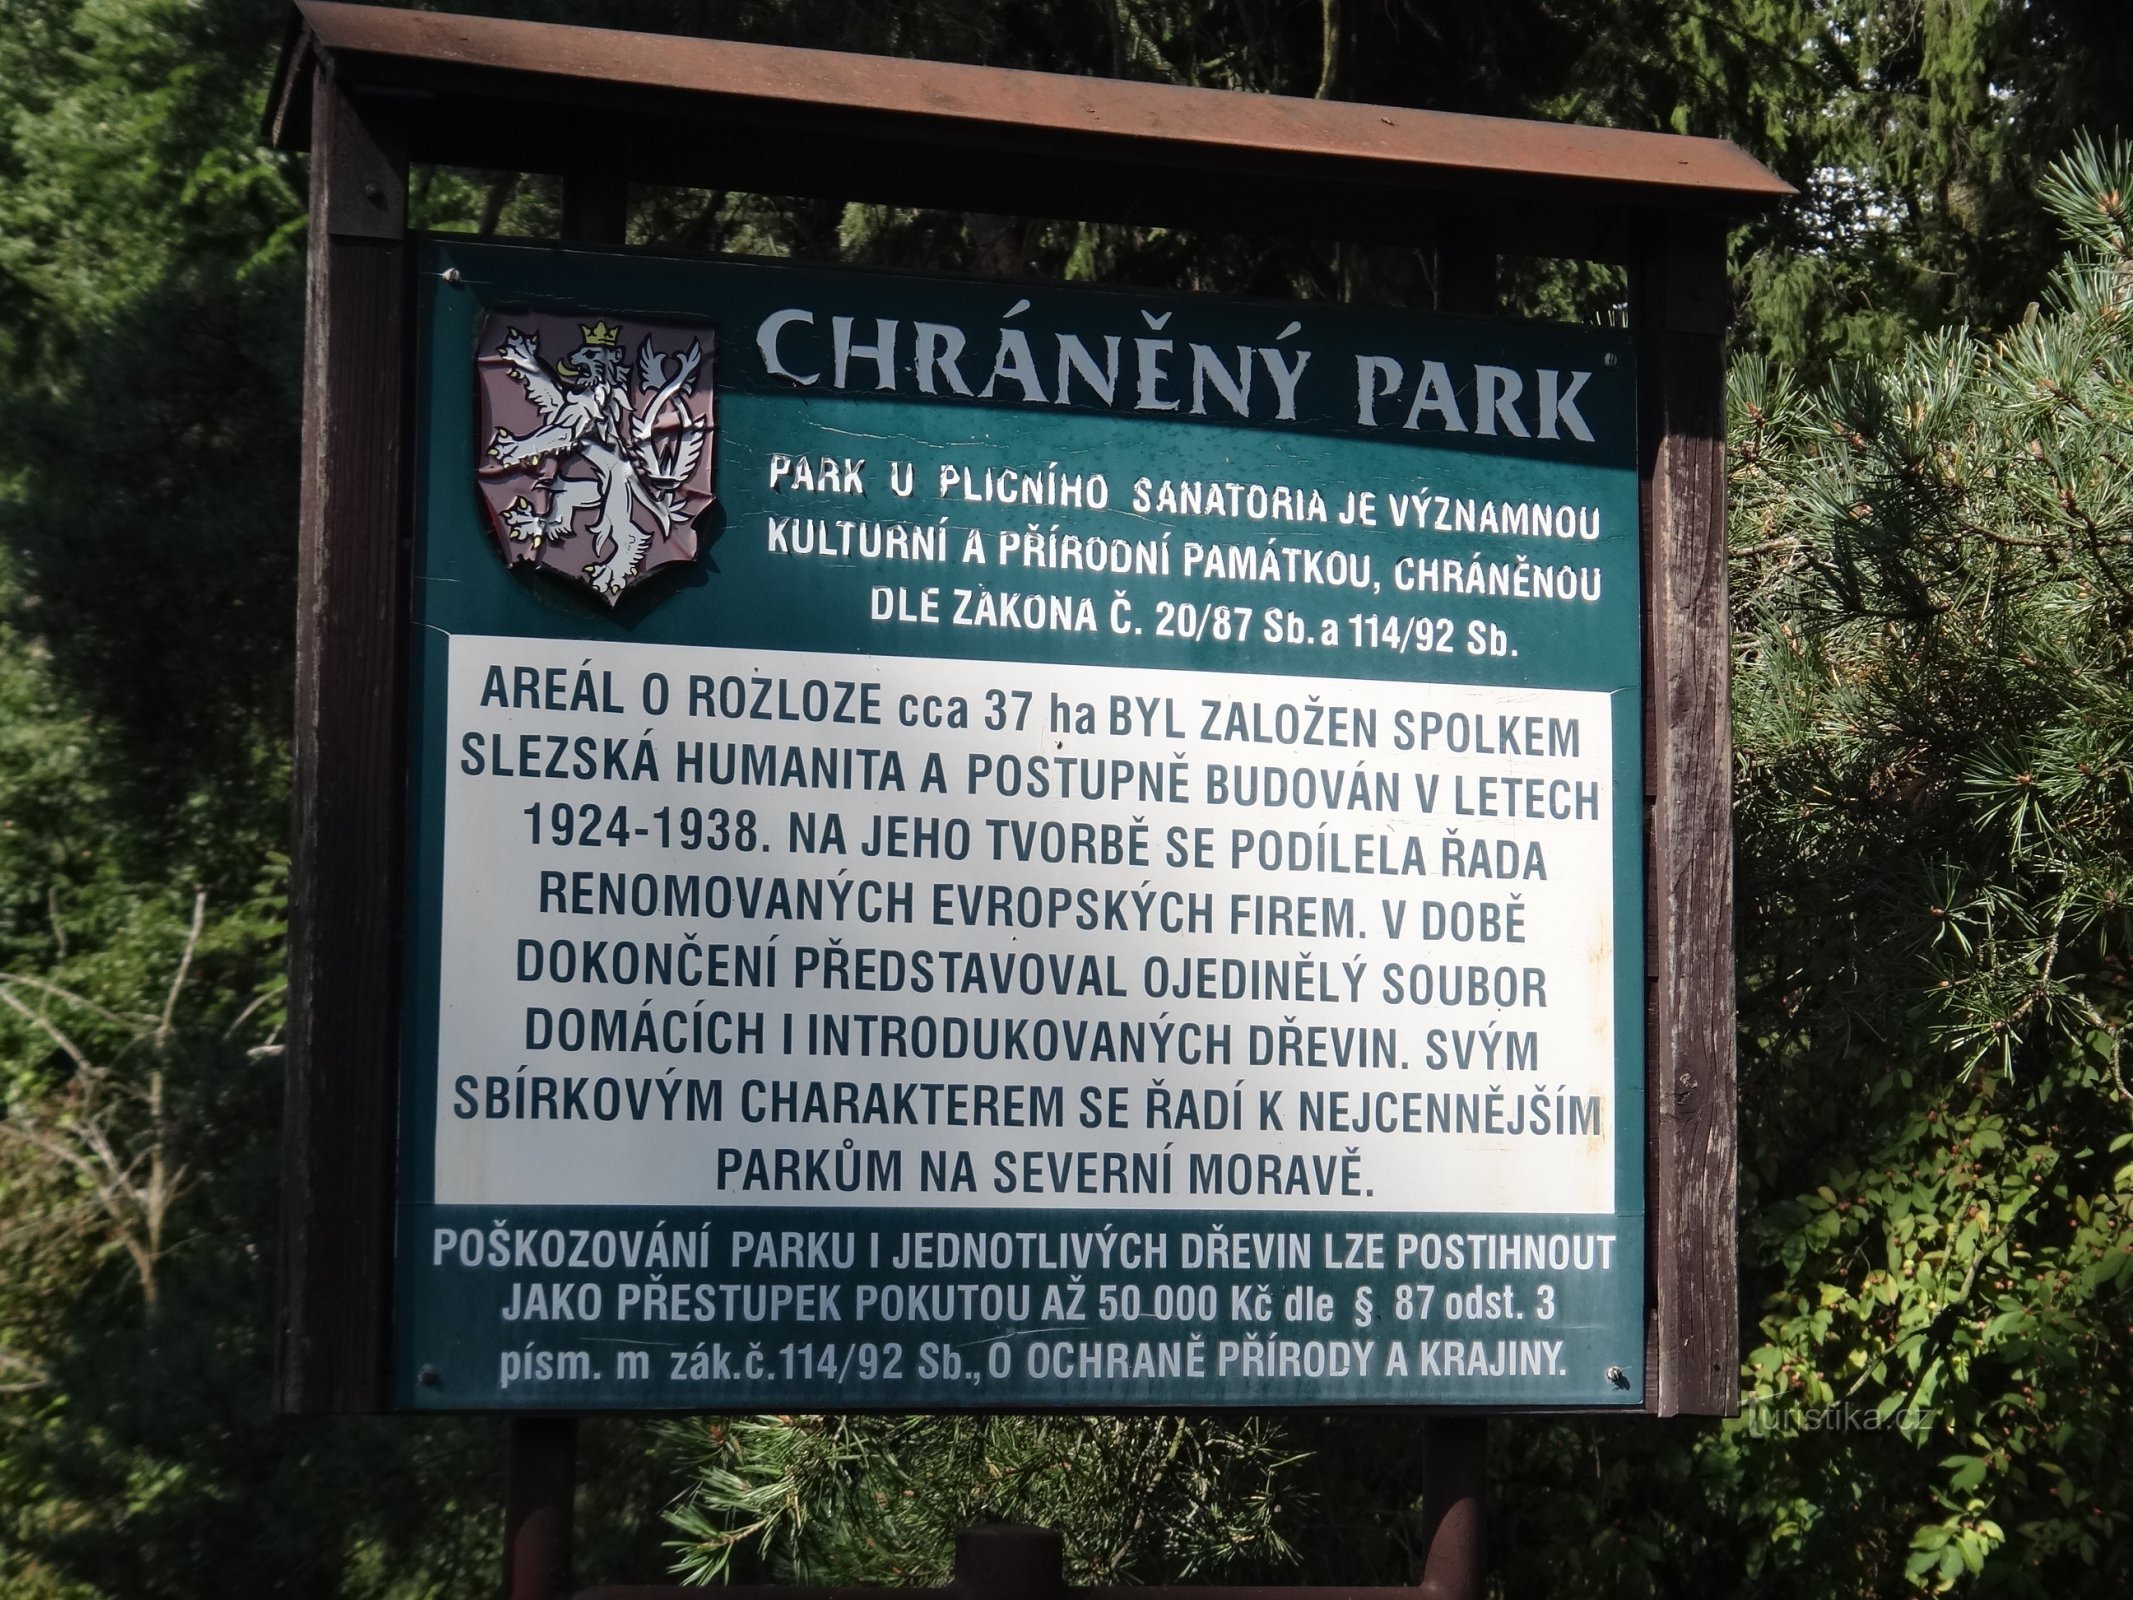 panel informacyjny o parku